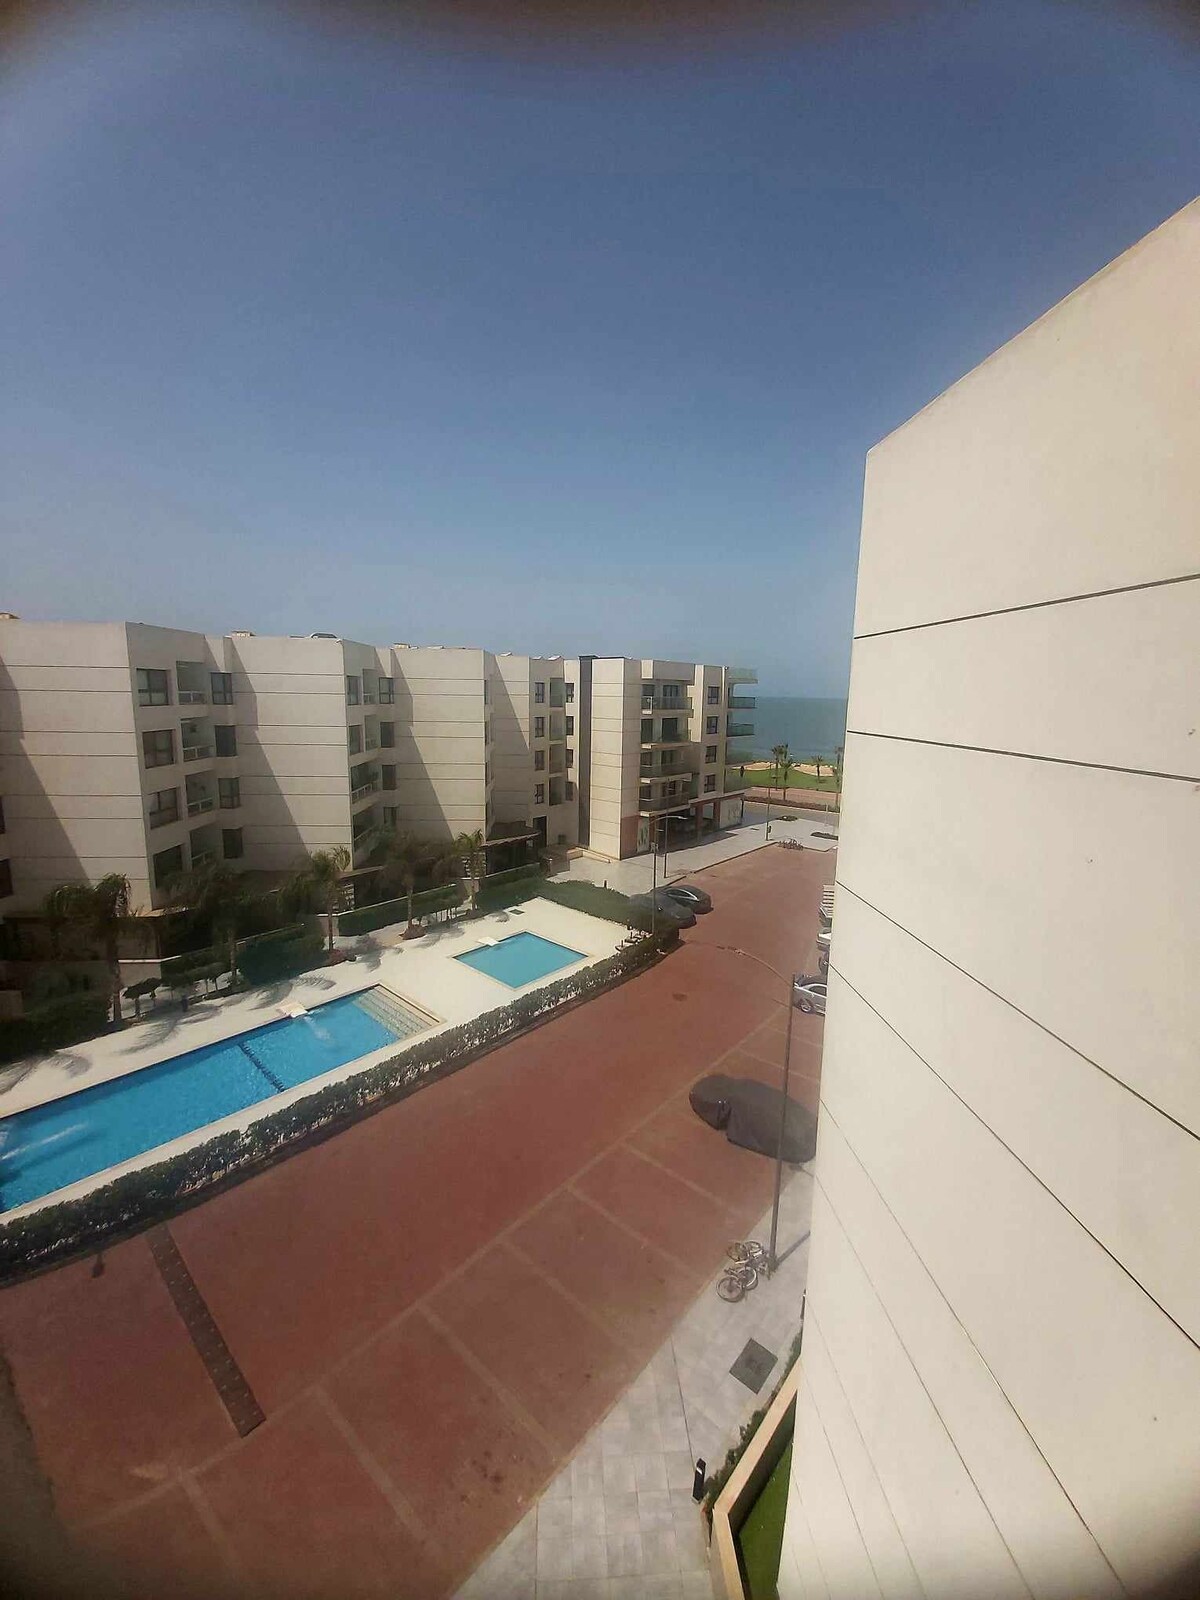 Porto said beach view apartment.